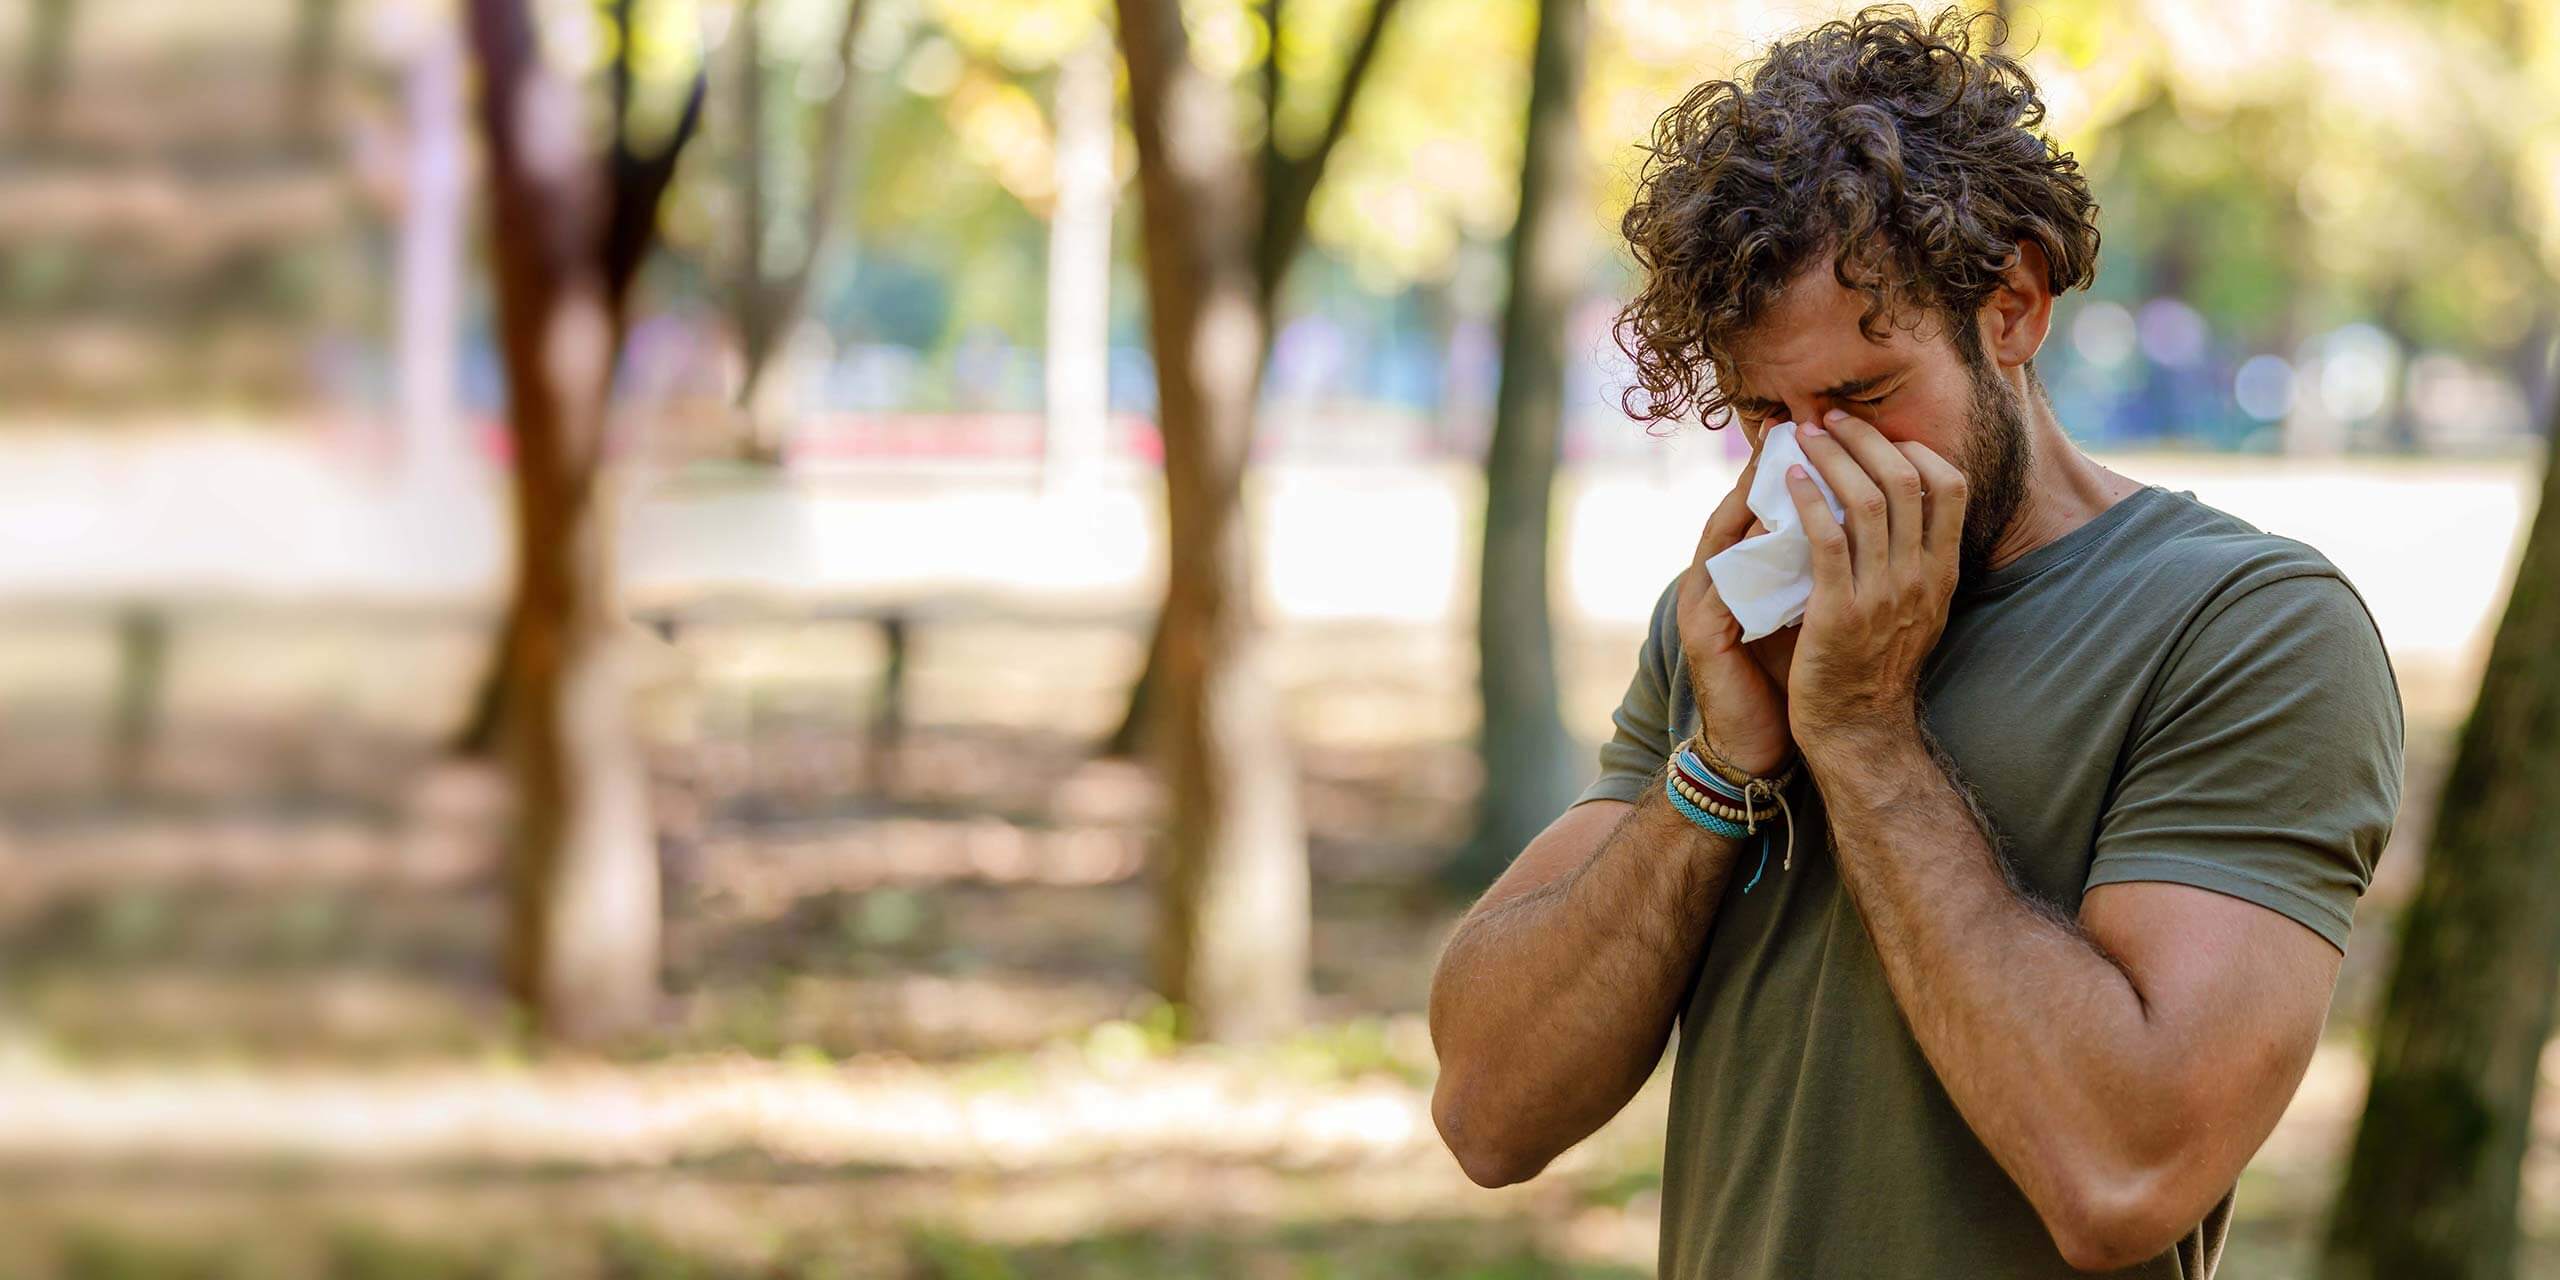 Ein Mann mit lockigem Haar steht draußen und putzt sich die Nase in ein Taschentuch, möglicherweise leidet er an Allergien oder einer Erkältung.